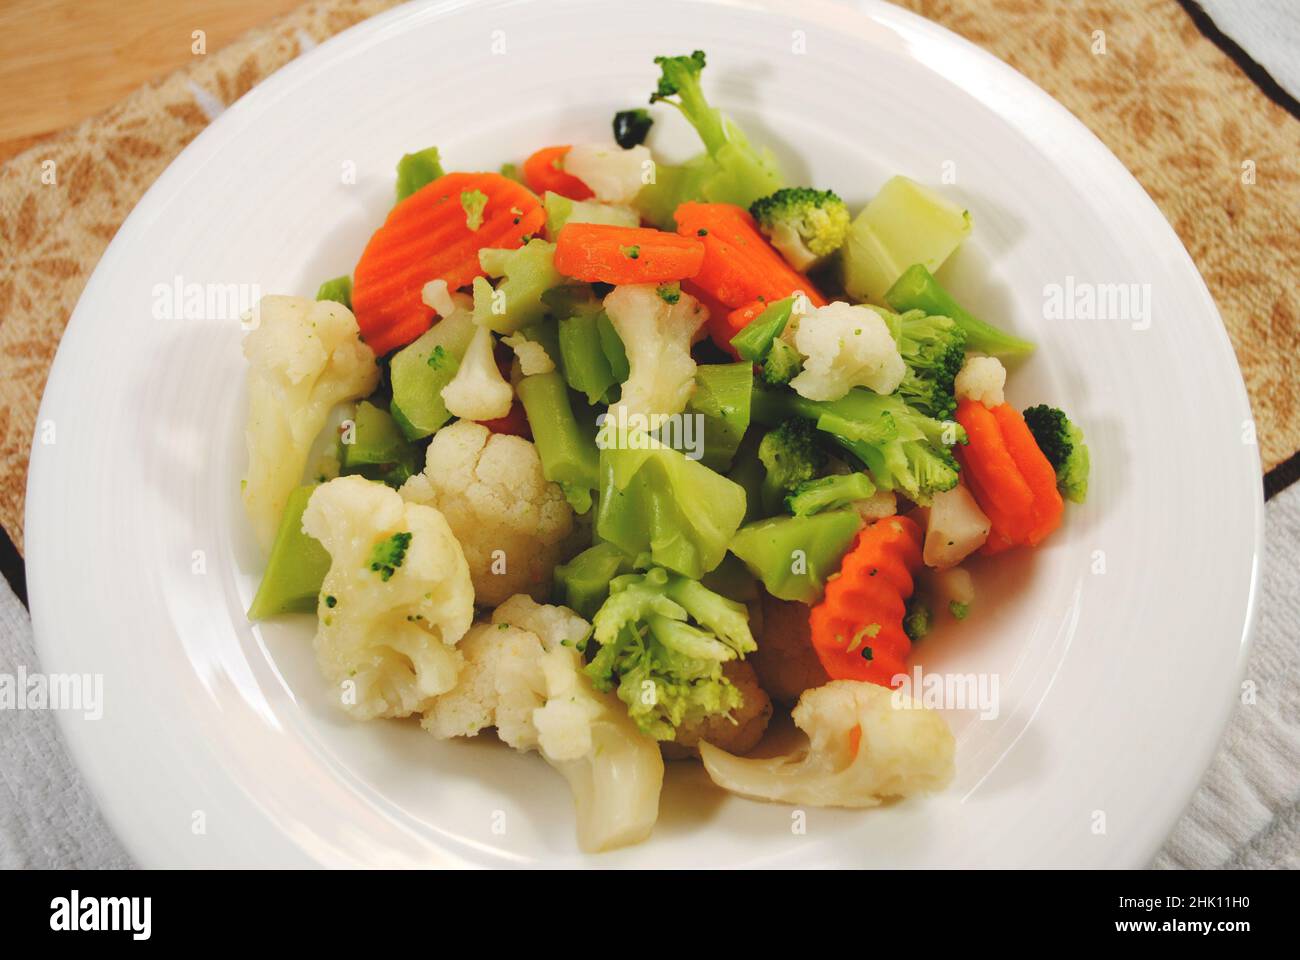 Eine Schüssel mit Broccoli, Blumenkohl und Karotten Stockfoto